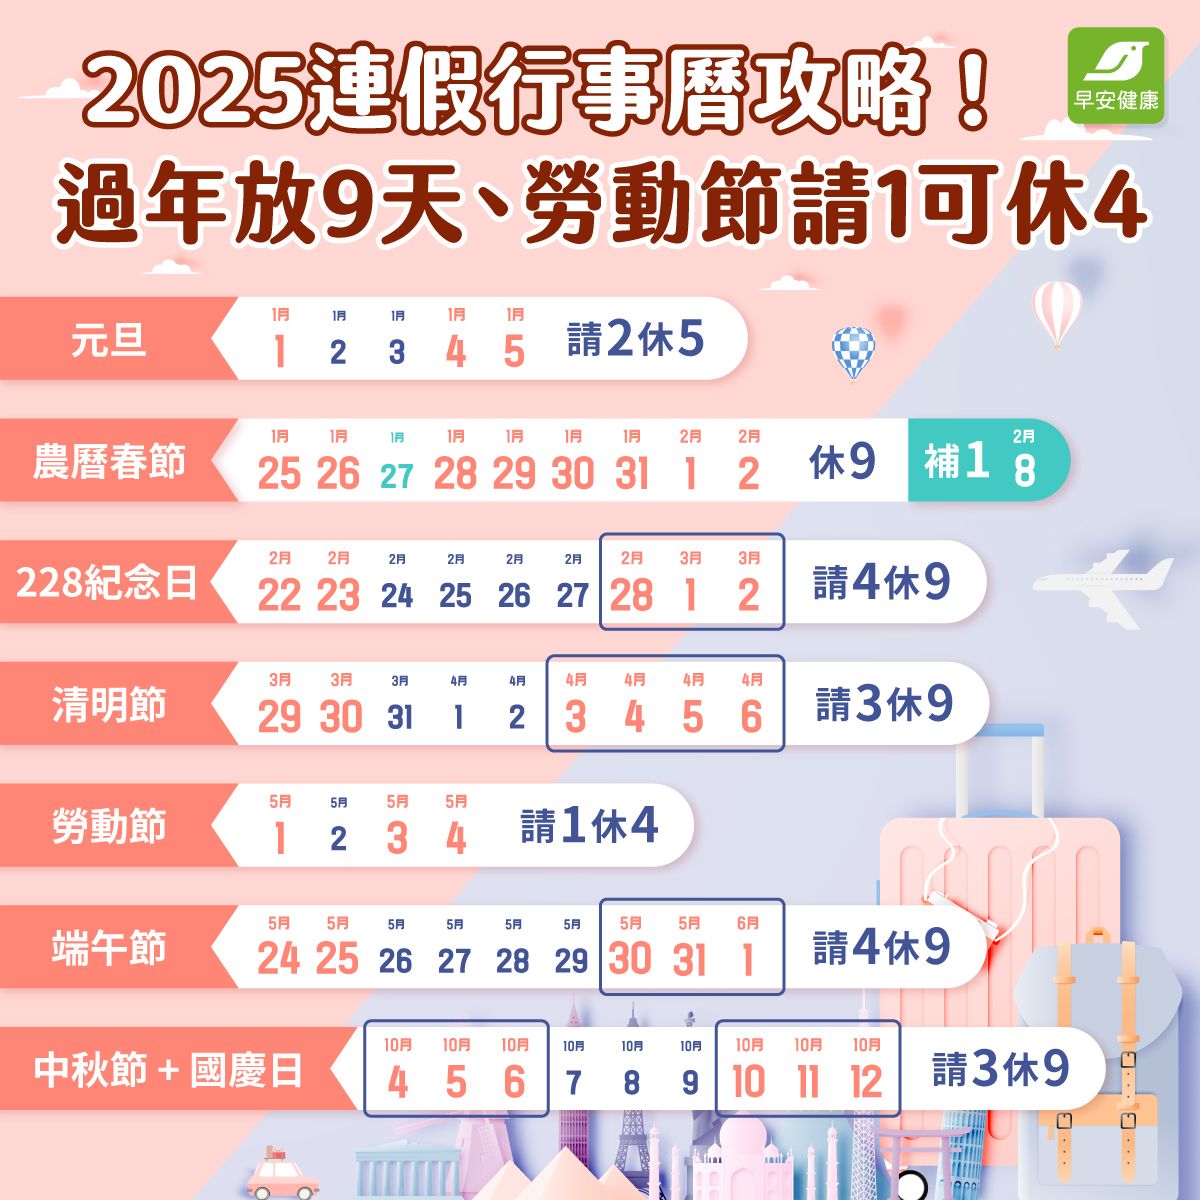 2025連假、國定假日放假補班行事曆與請假攻略